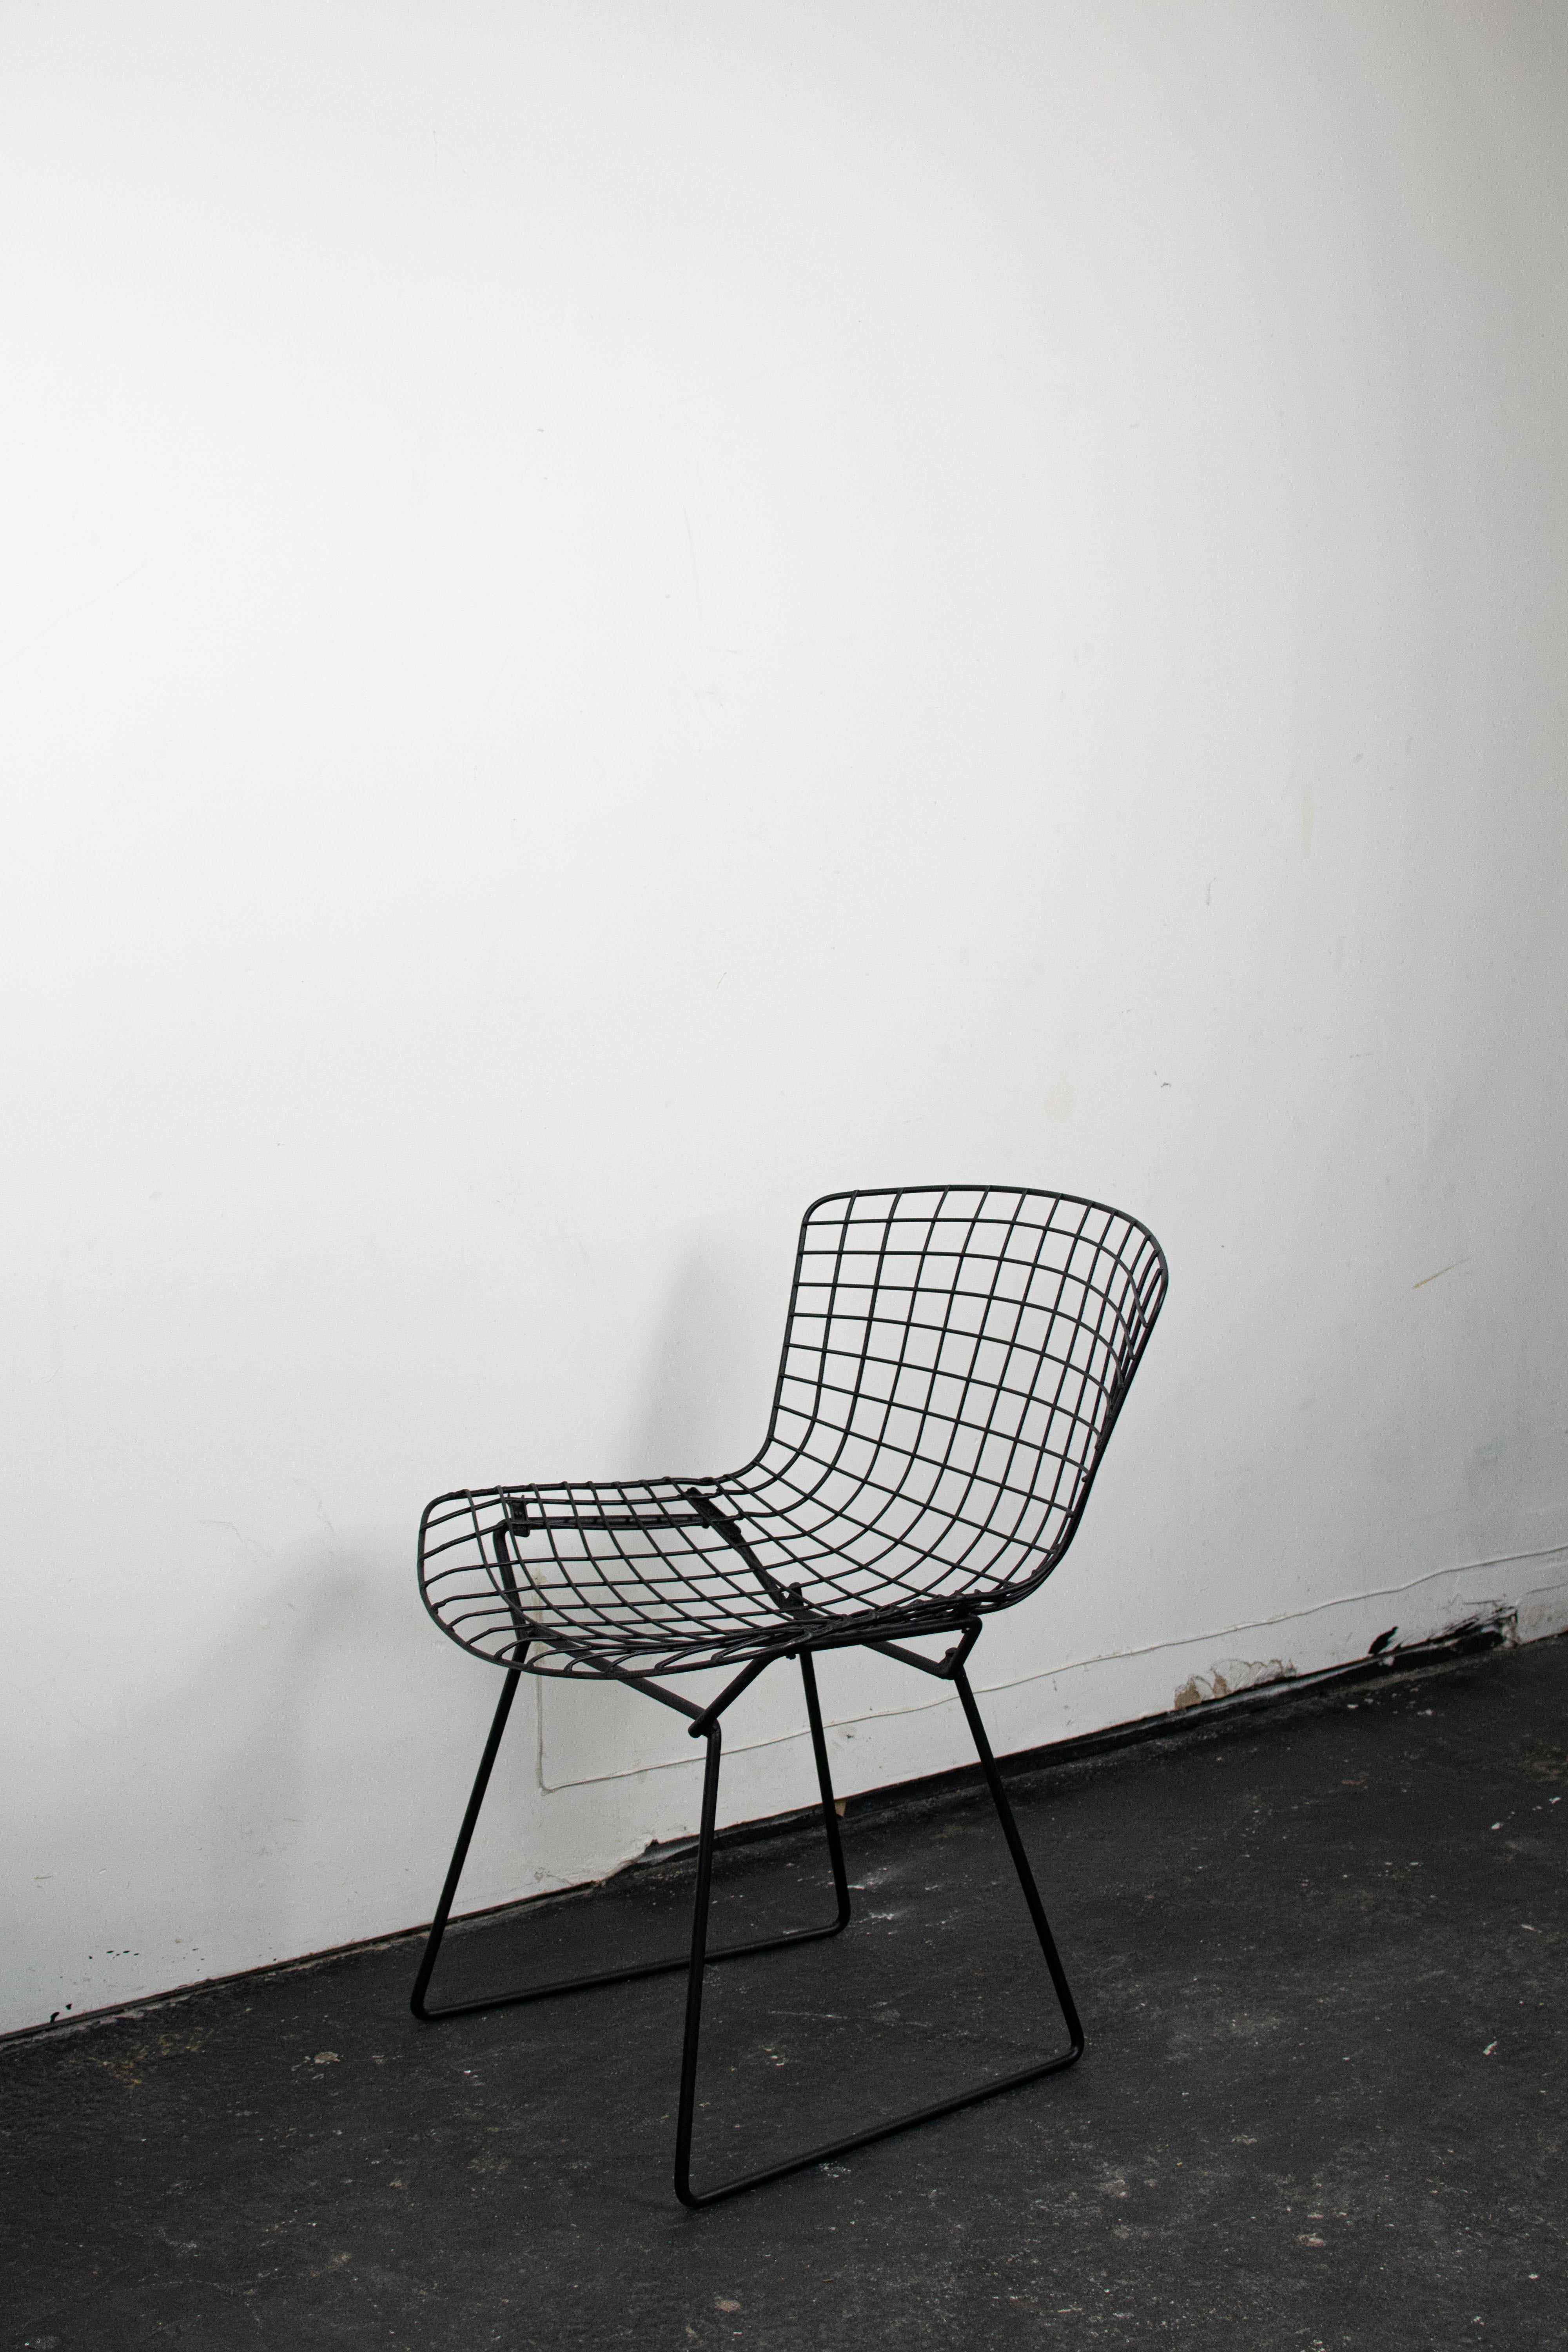 La Chaise Wire, conçue par Harry Bertoia pour Harris, est une œuvre emblématique du design moderne. Réalisée en 1952, cette pièce innovante est composée d'une structure en maille de fils d'acier supportée par de fins pieds métalliques. La